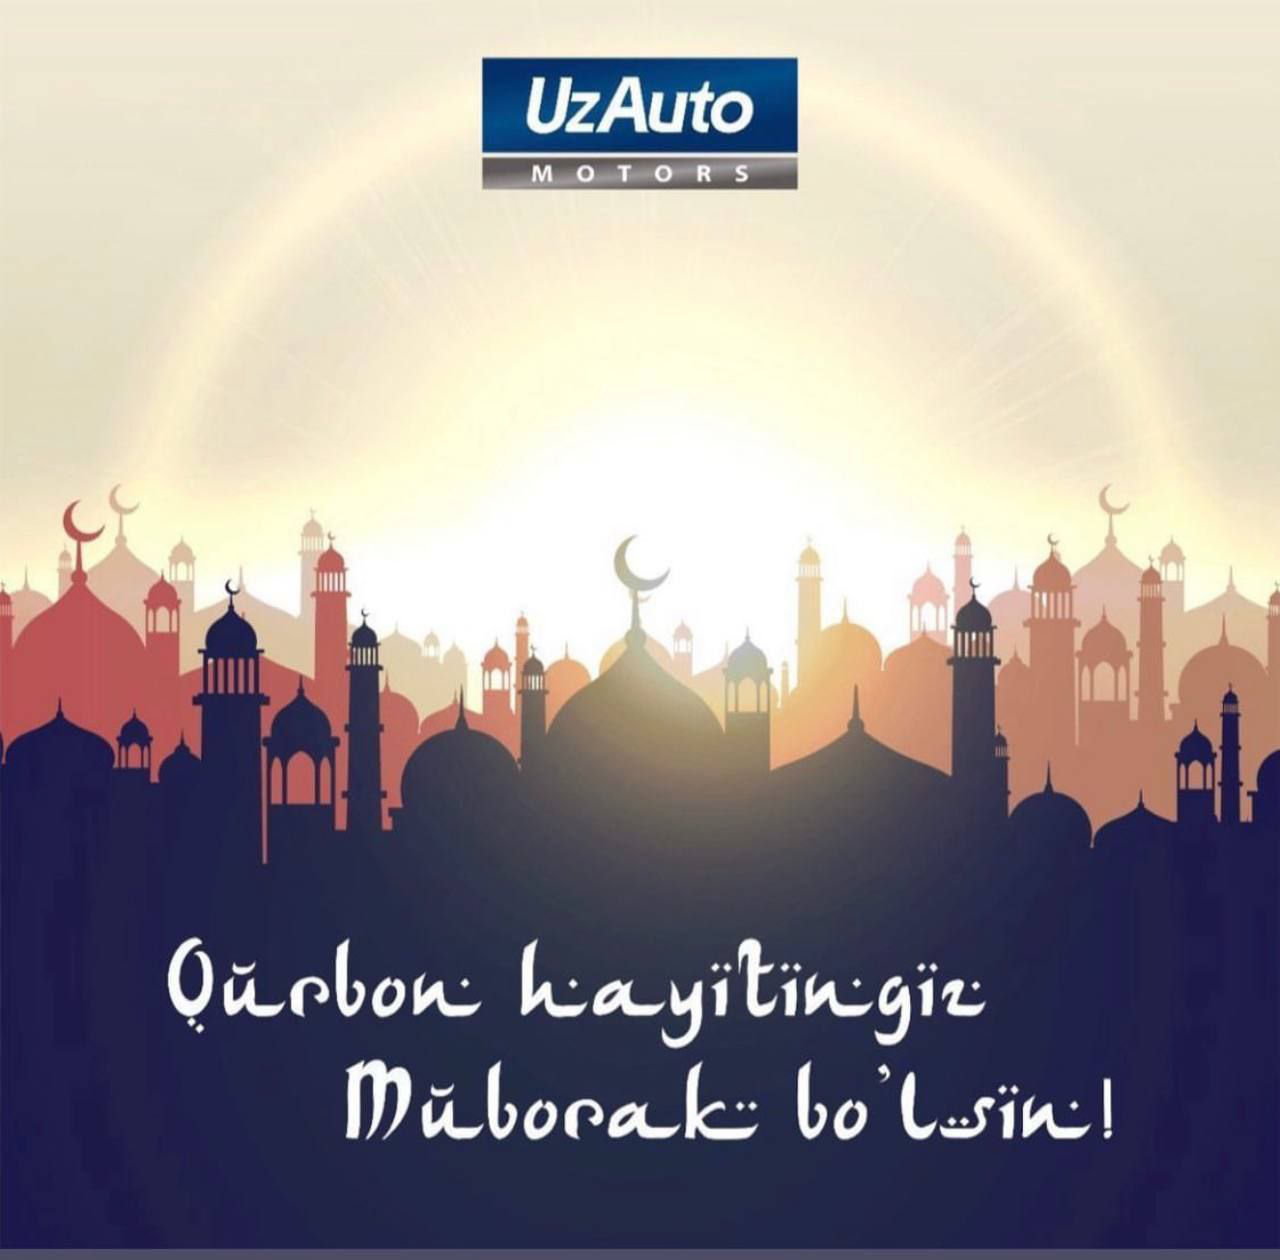 UzAuto Motors kompaniyasi barchangizni muborak Qurbon Hayiti bilan samimiy tabriklaydi